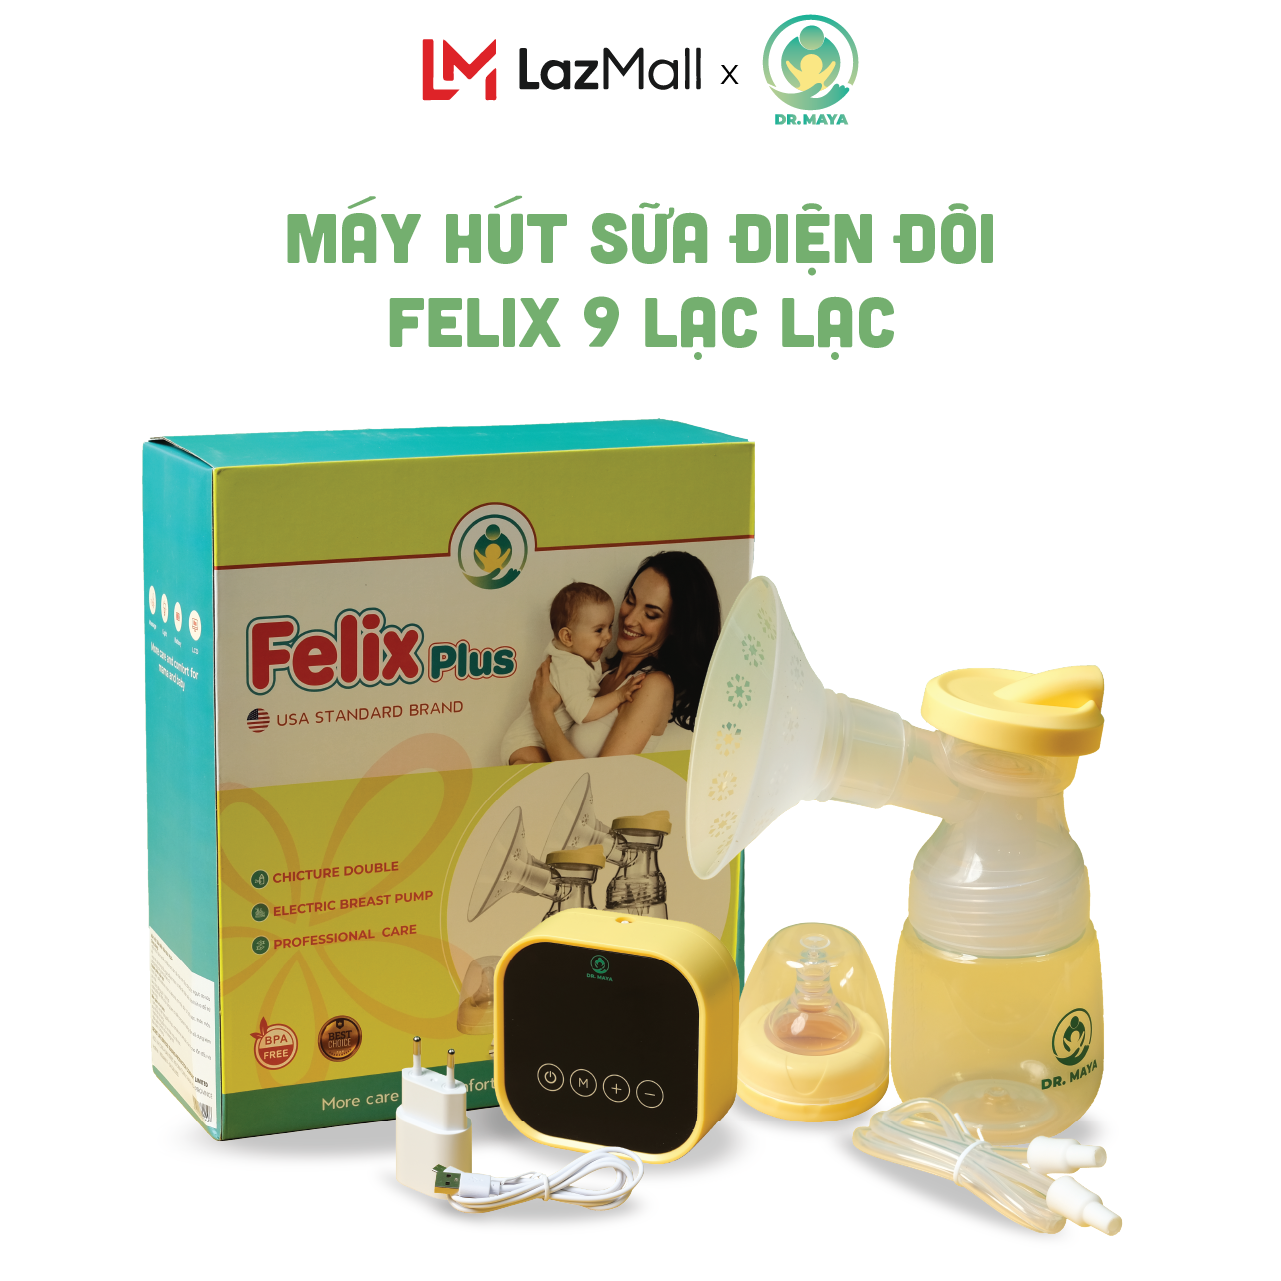 Máy hút sữa Điện Đôi Felix 9 Lạc lạc Dr.maya cấp độ hút chuyên sâu  Bảo